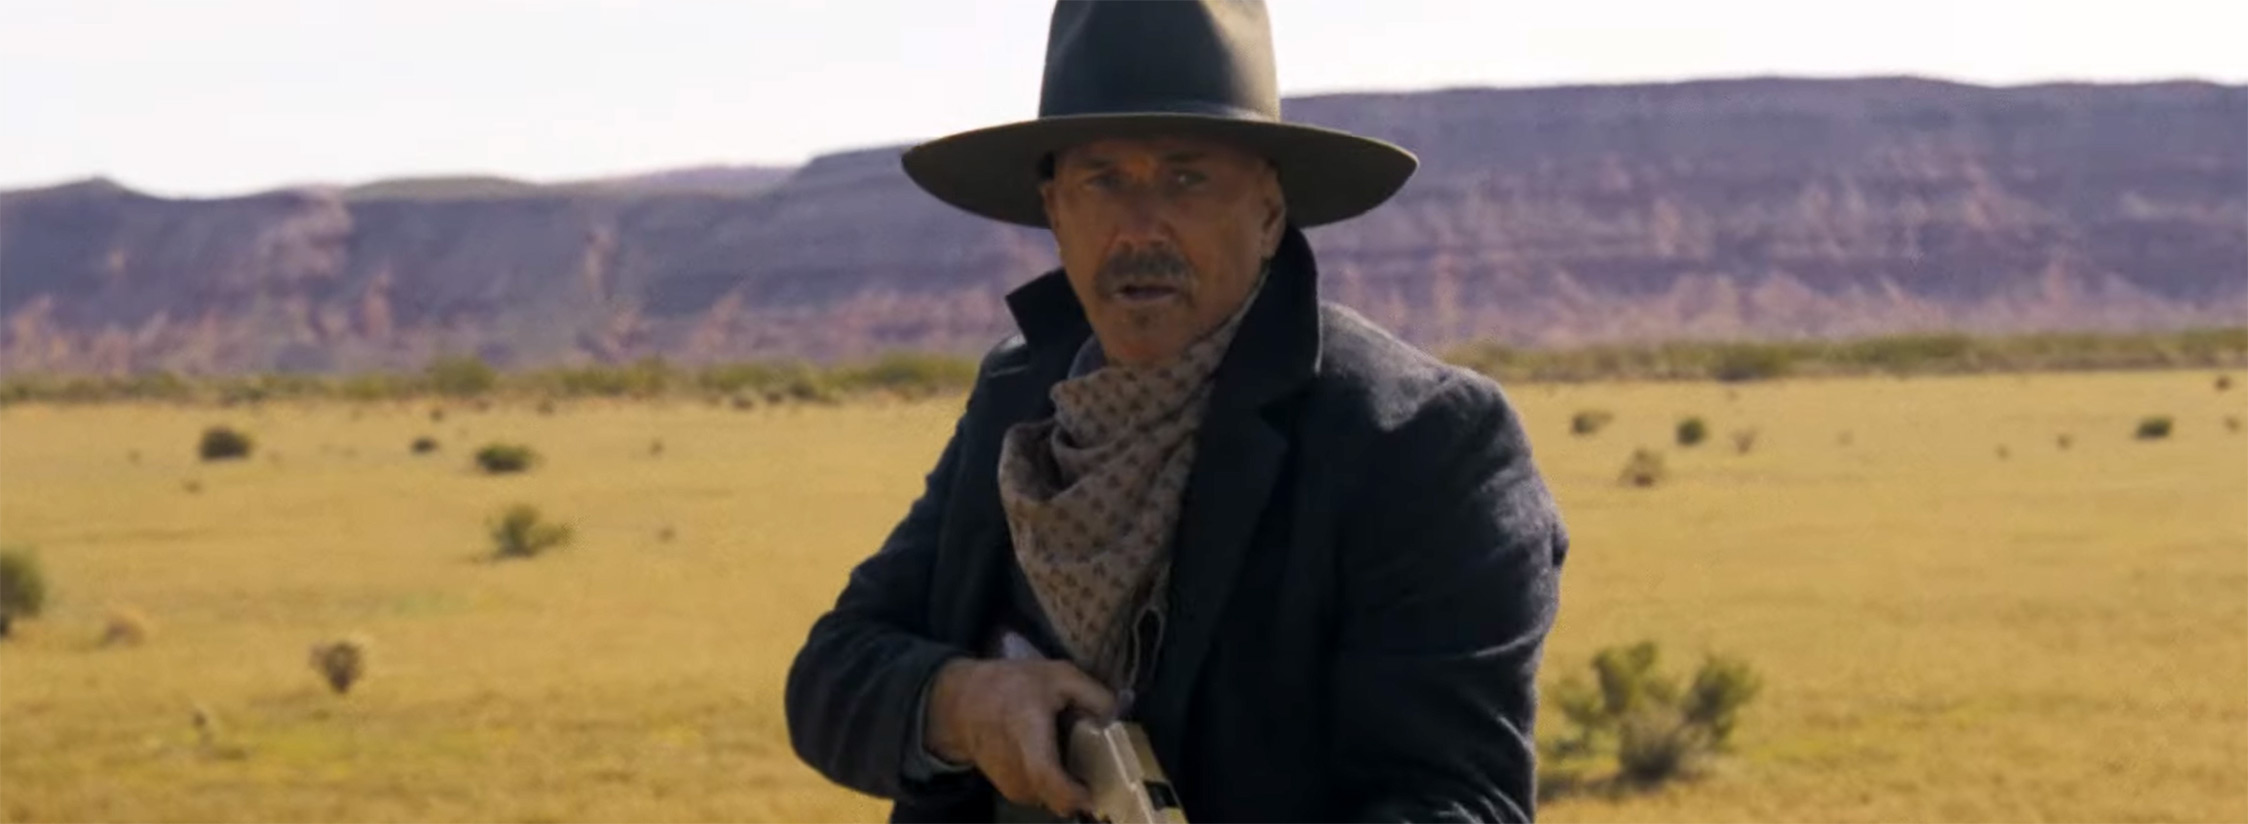 Kevin Costner saddles up for a new western epic - JB Hi-Fi